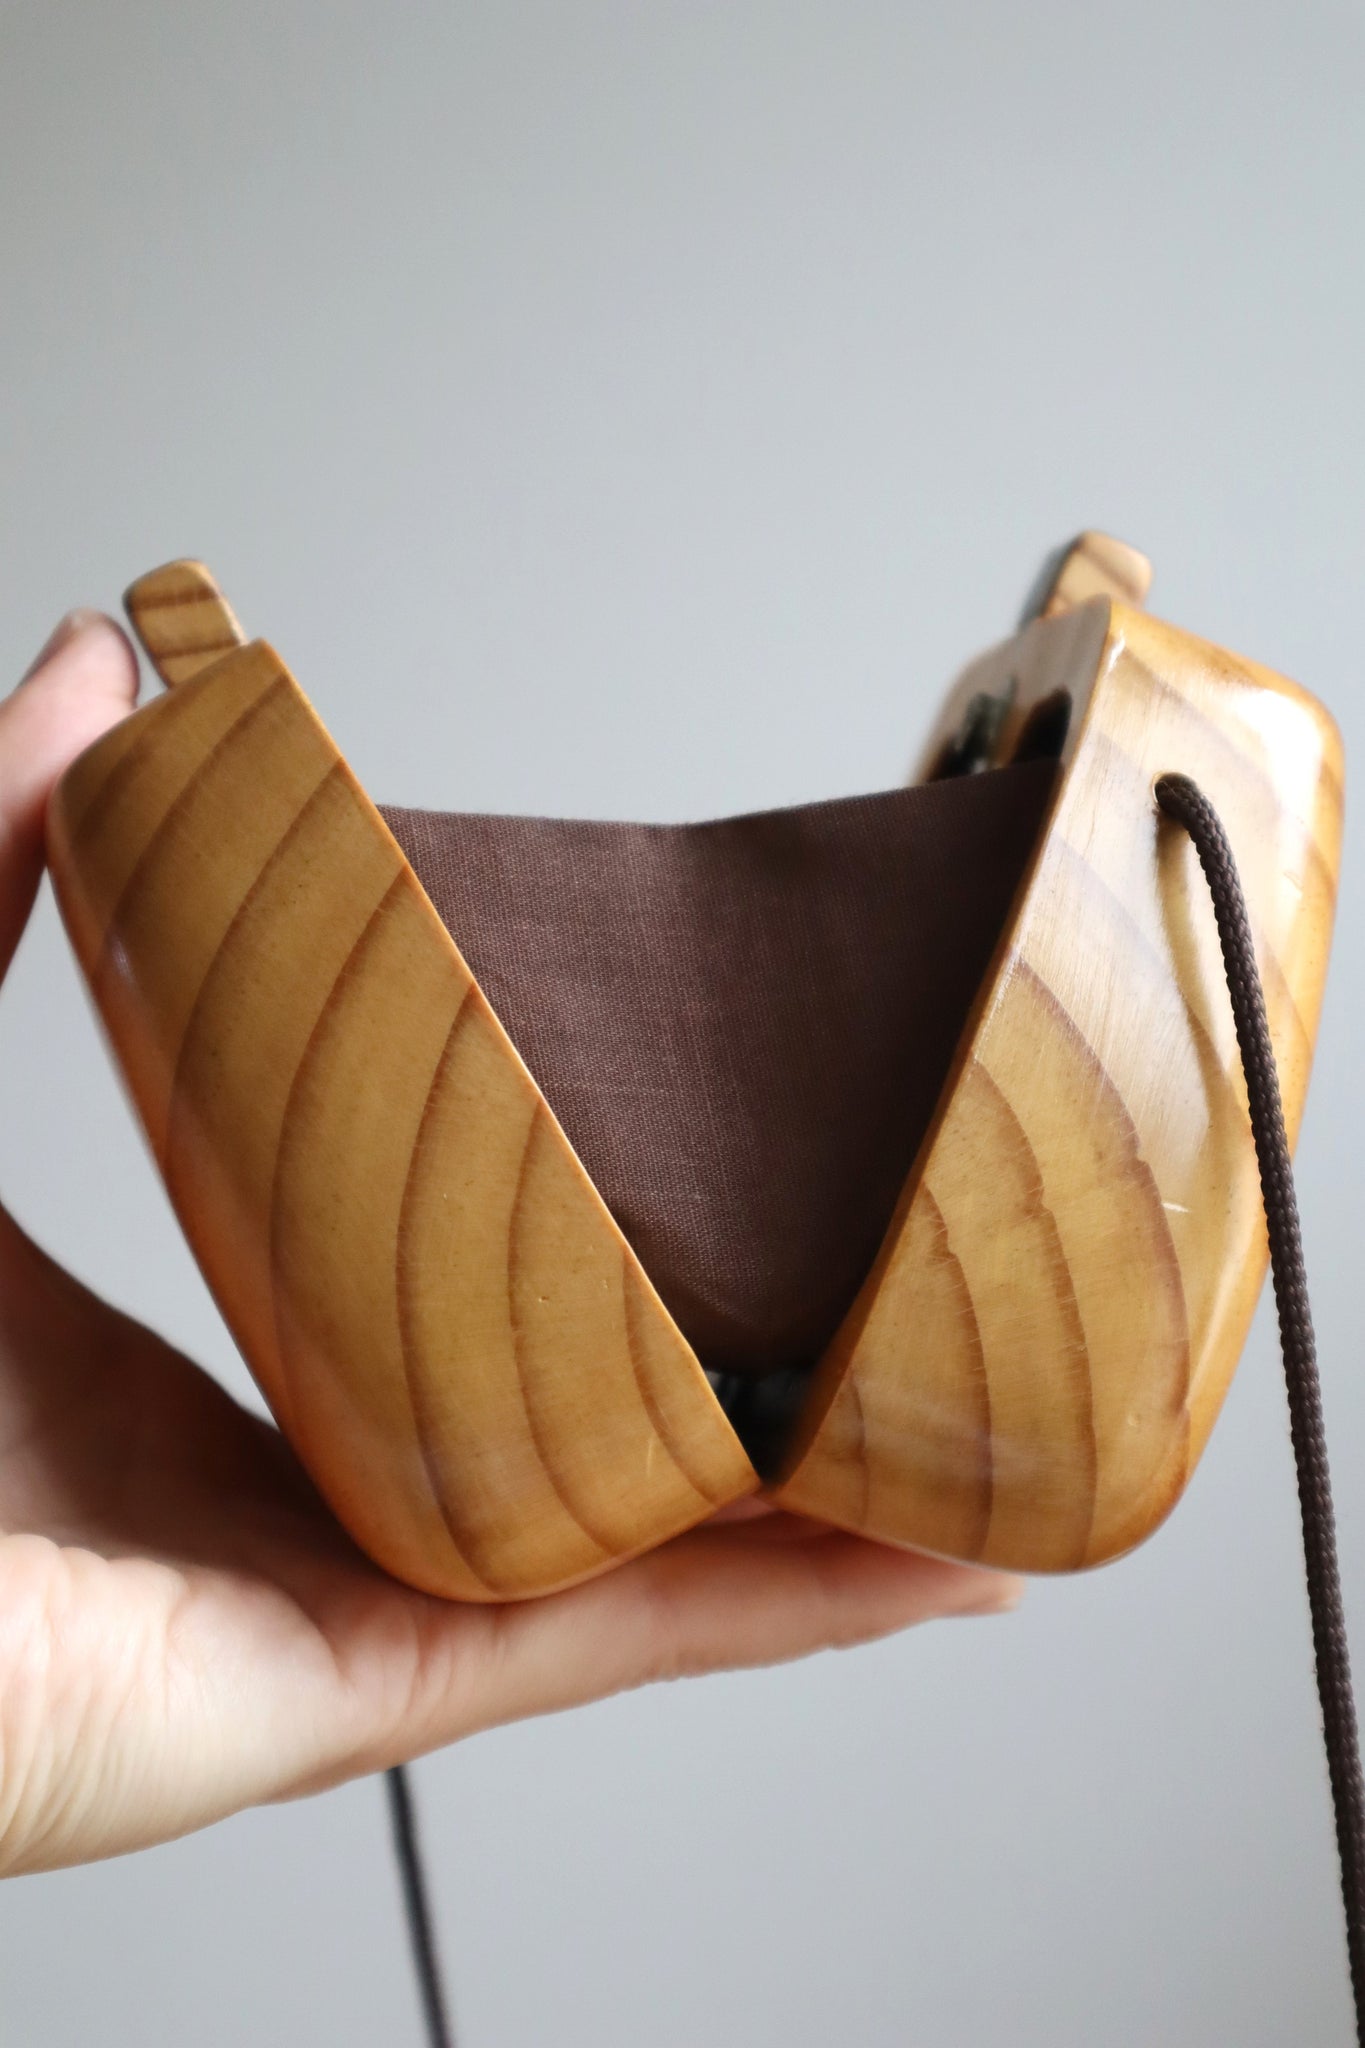 70s Wood Hand Bag